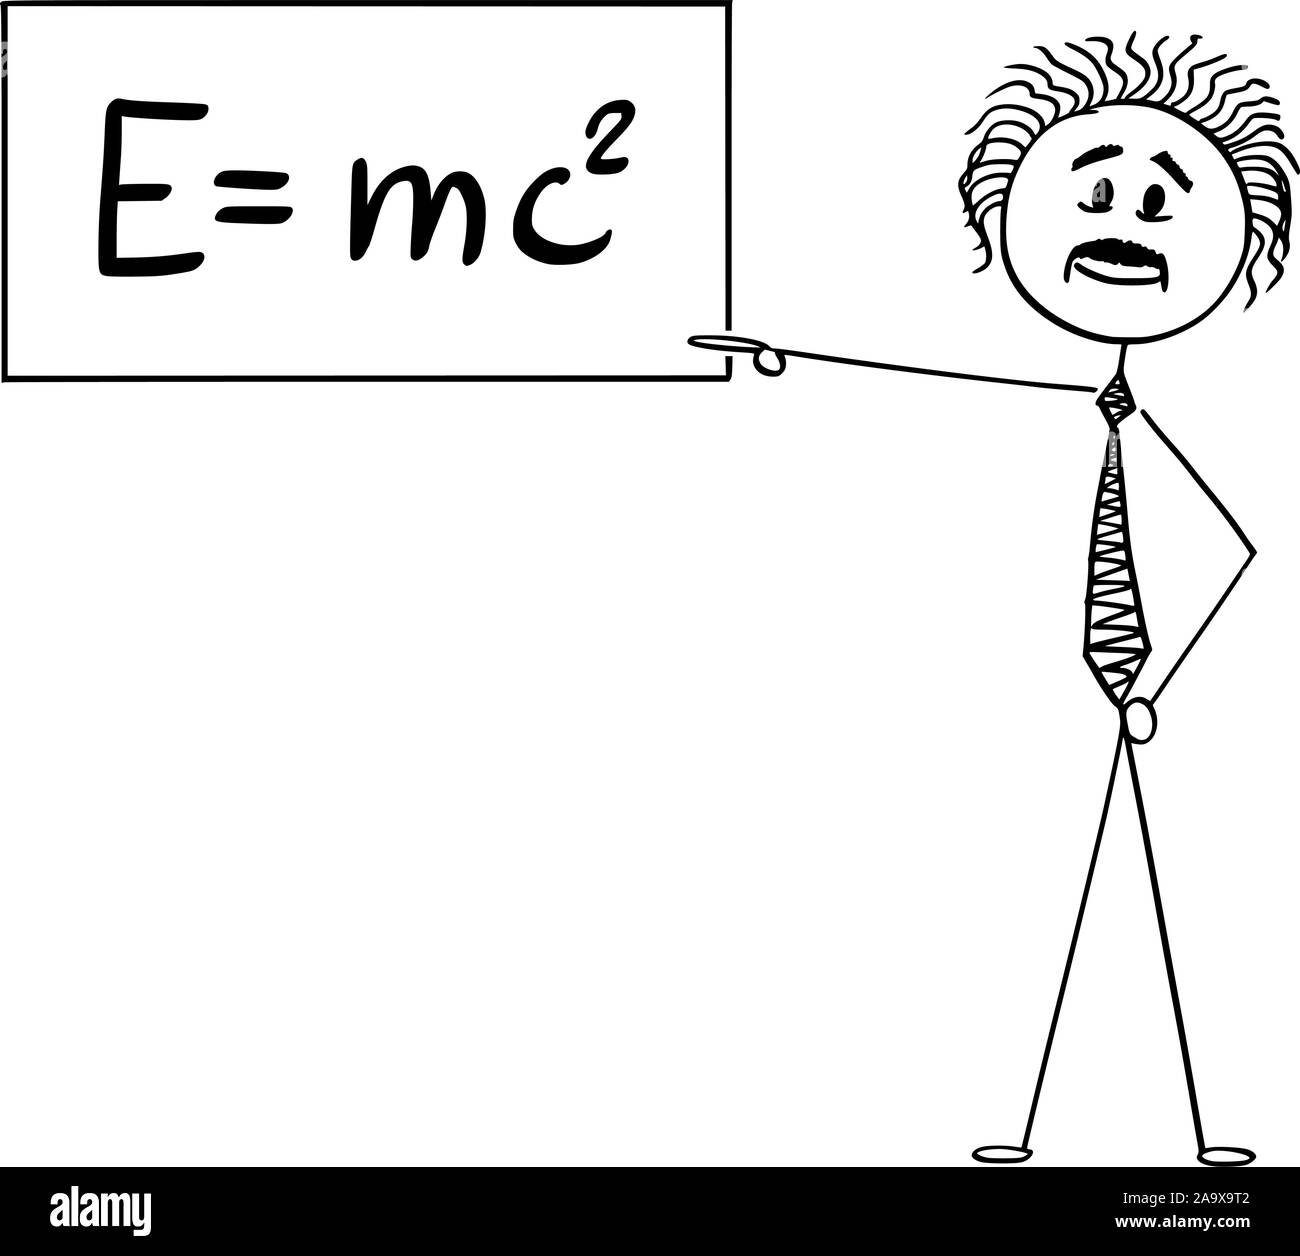 Vector cartoon stick figure dessin illustration conceptuelle du scientifique Albert Einstein pointant à signer avec E  = mc2 de l'équation de la TRR. Illustration de Vecteur